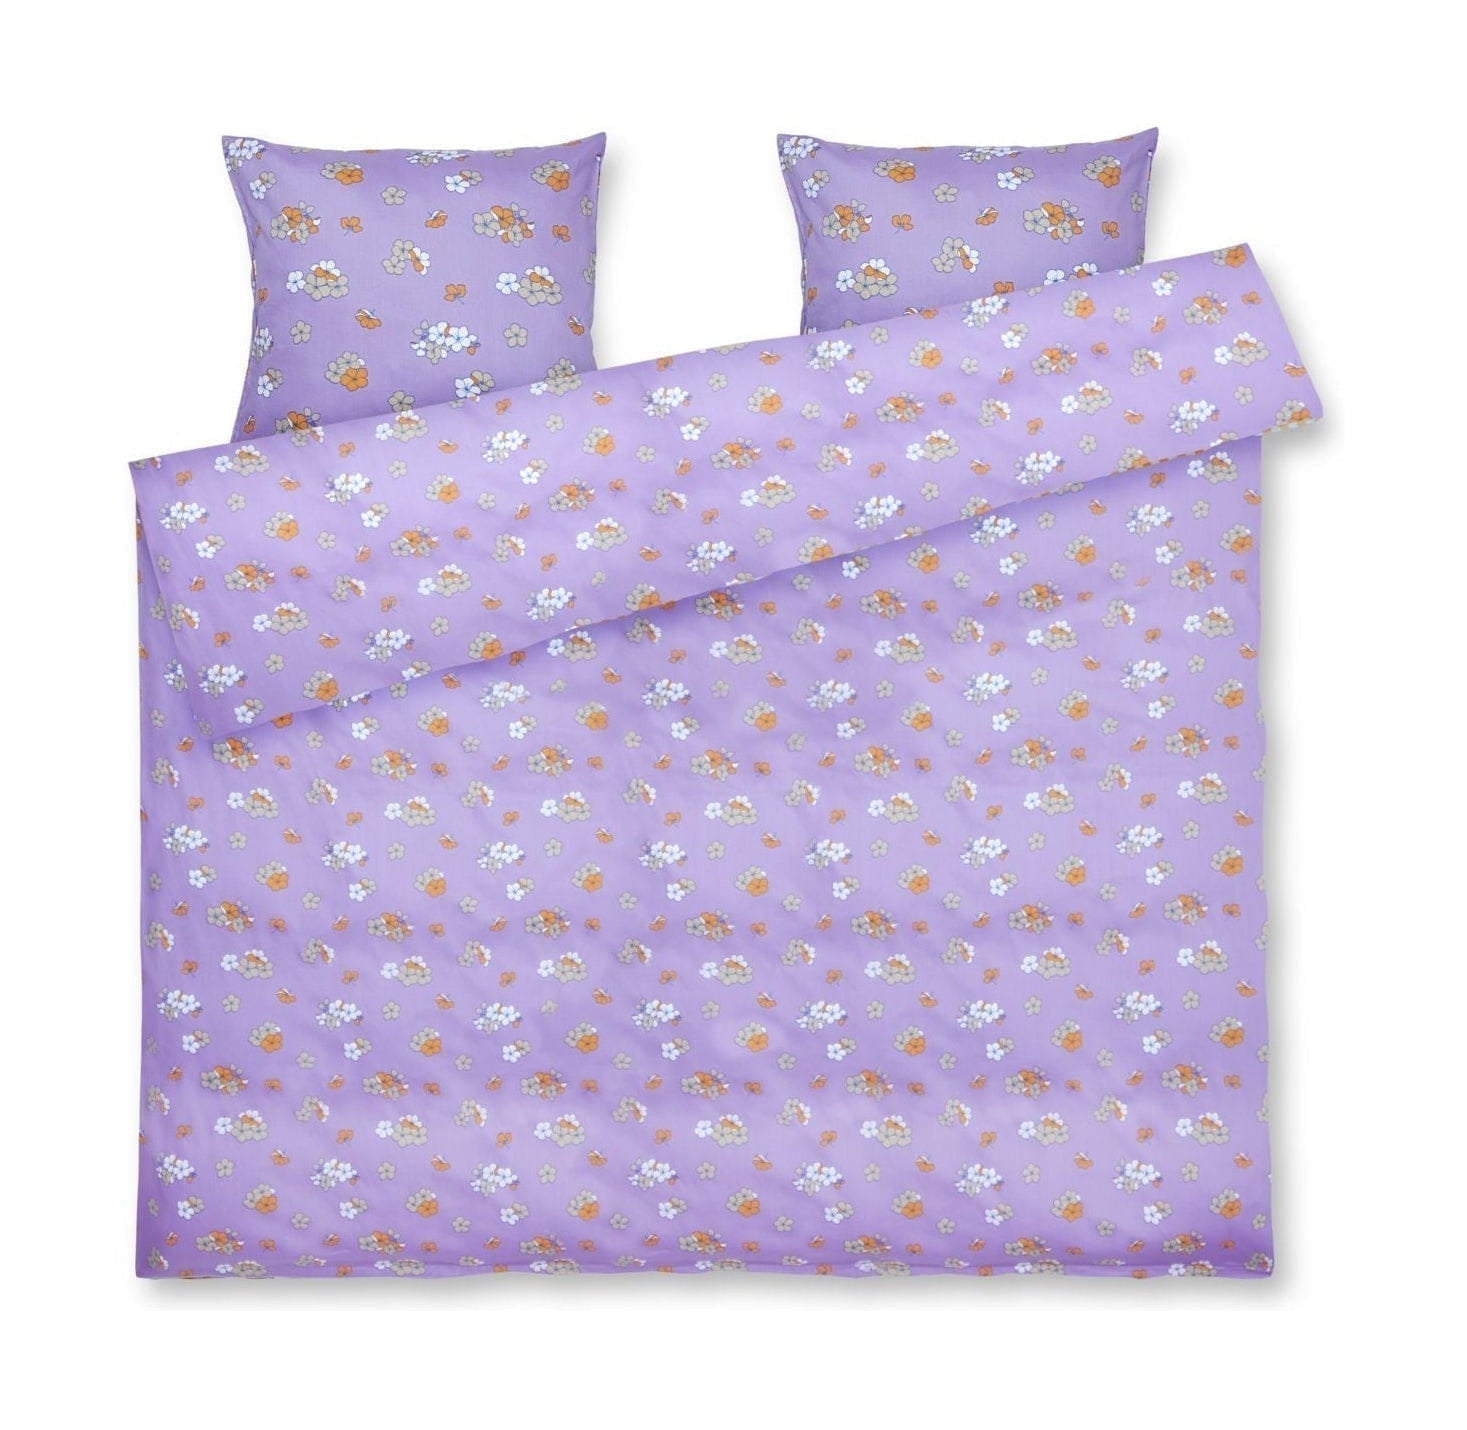 Juna Stora behagligt sängkläder 200x220 cm, lila